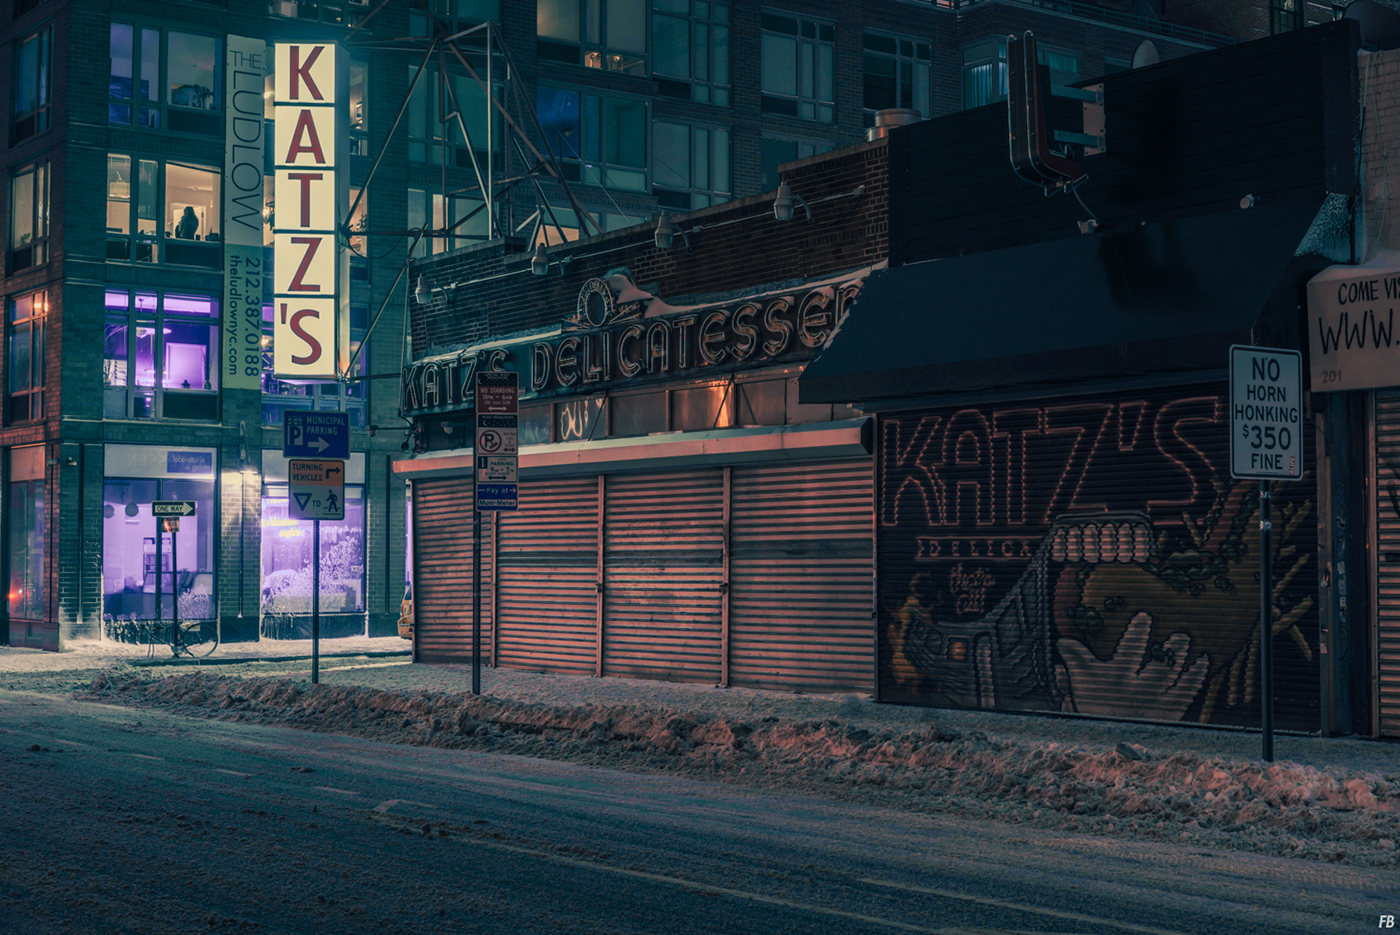 Katz's,  Closed, NYC, 2014